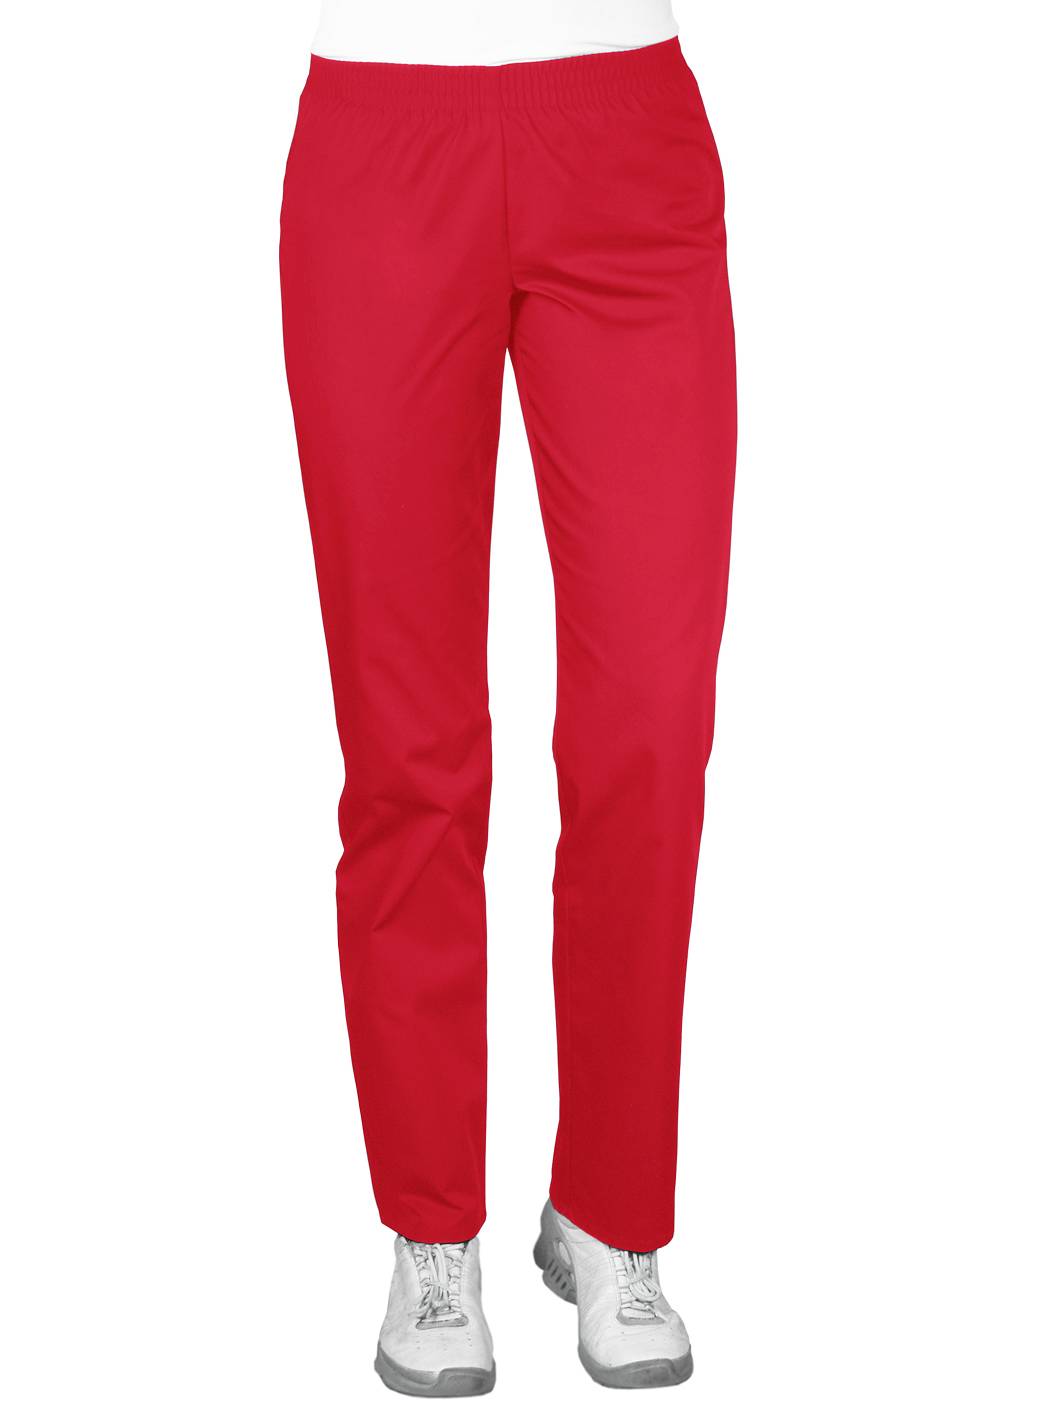 Spodnie medyczne czerwone, z elastycznym pasem (SC4-Cz)